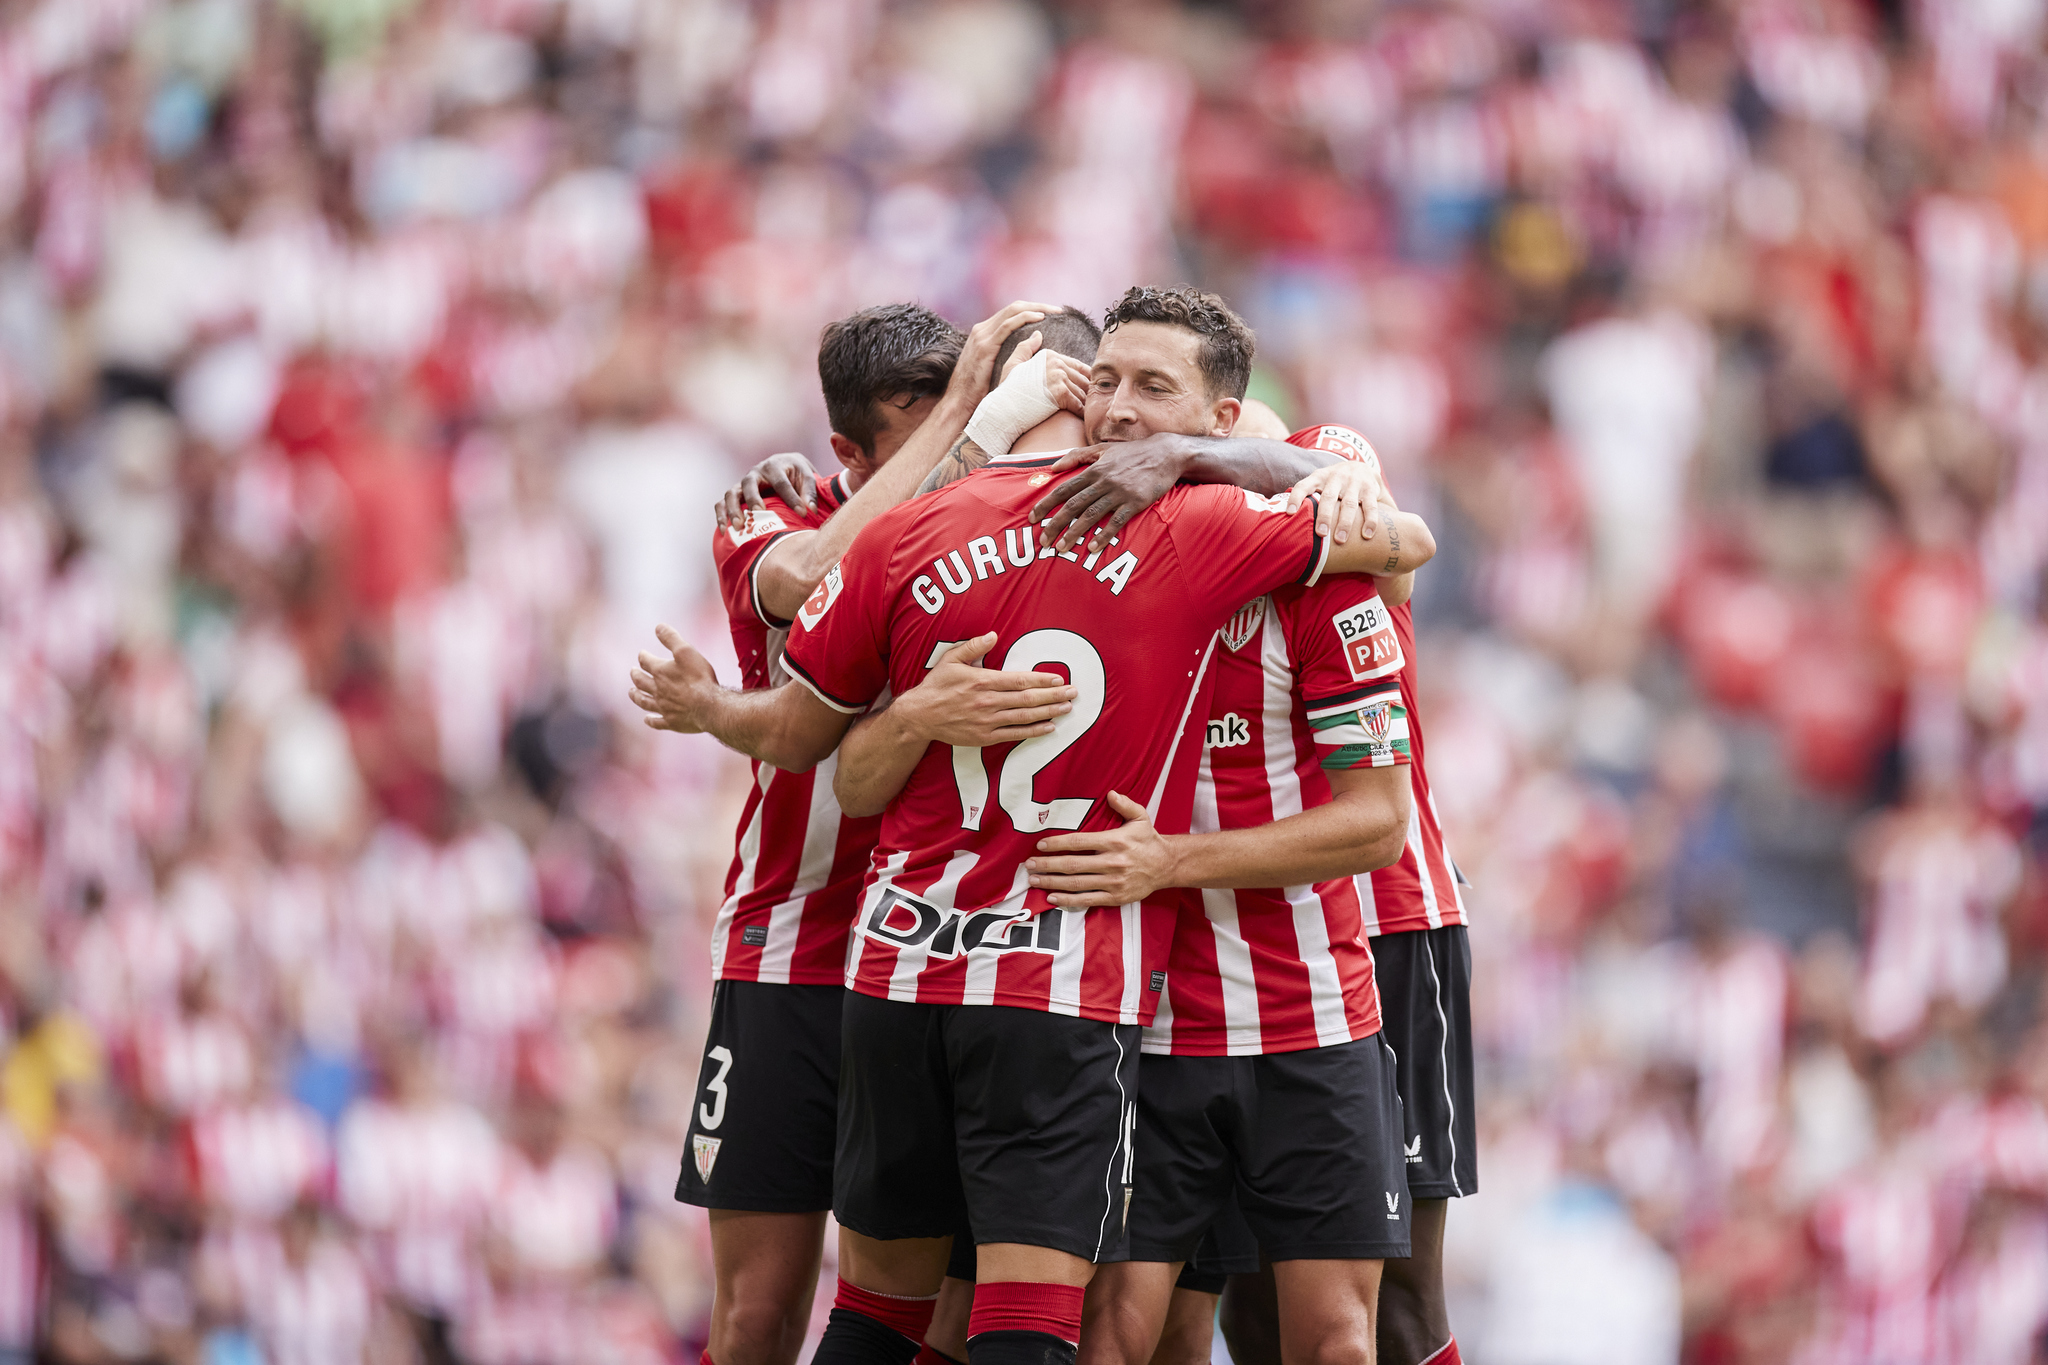 Guruzeta, abrazado por sus compañeros tras marcar el primer gol del partido ante el Cádiz.